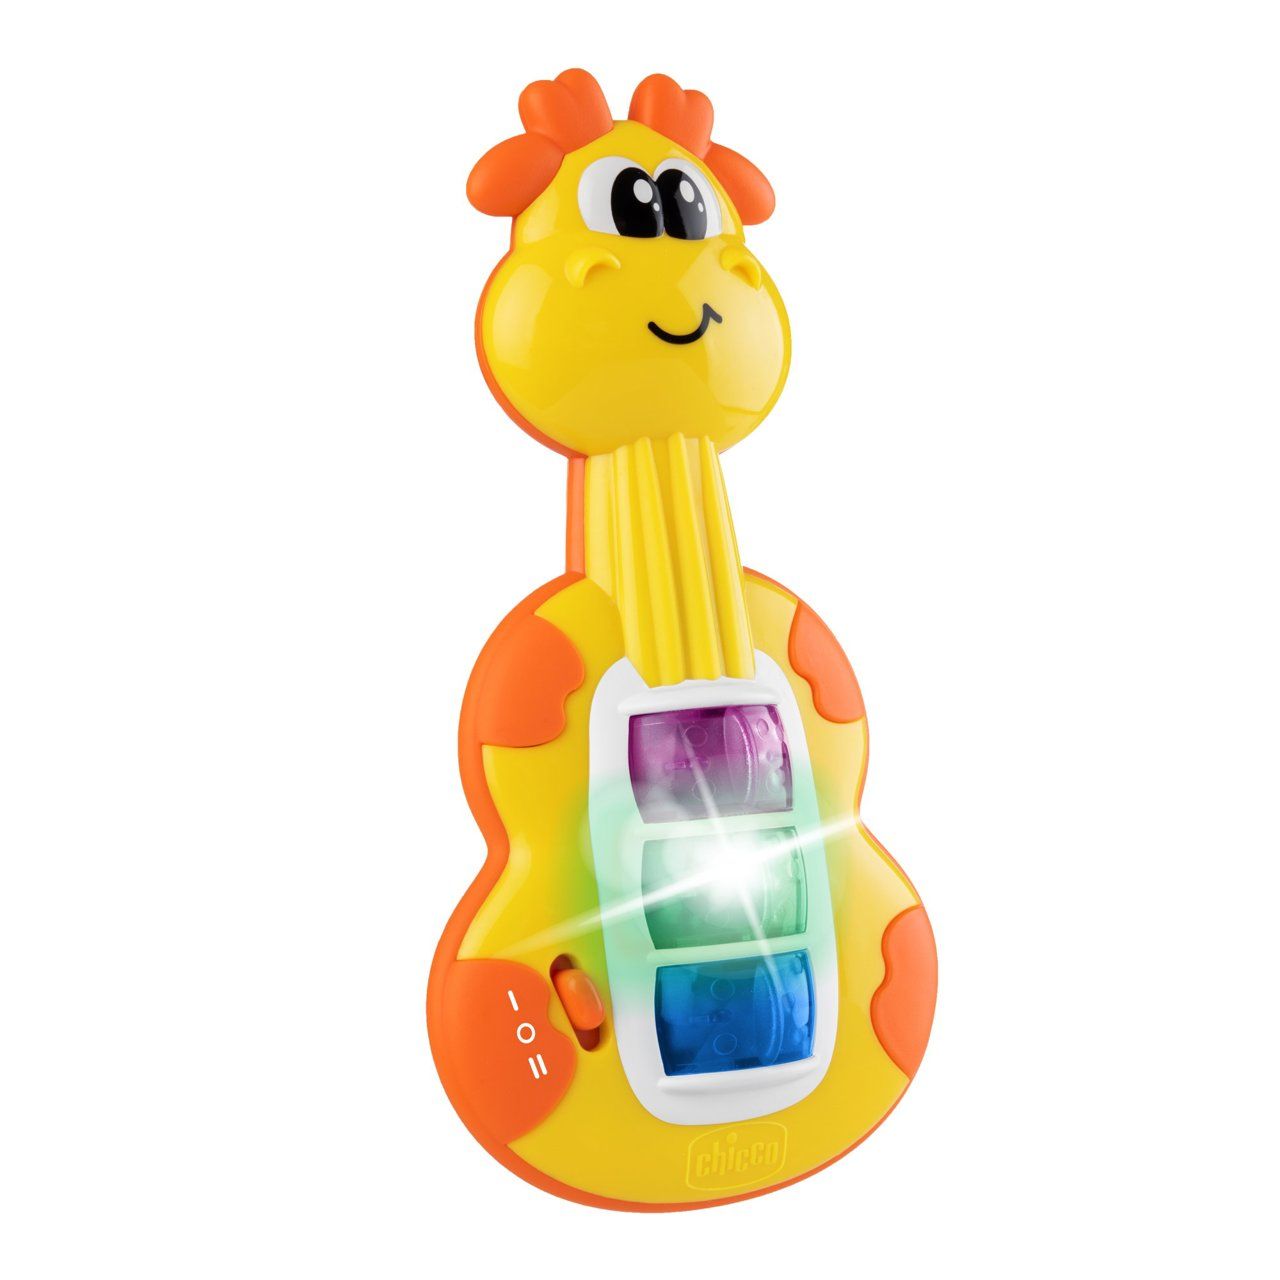 Игрушка музыкальная Chicco Мини гитара, со световыми эффектами, желтый (11160.00) - фото 2